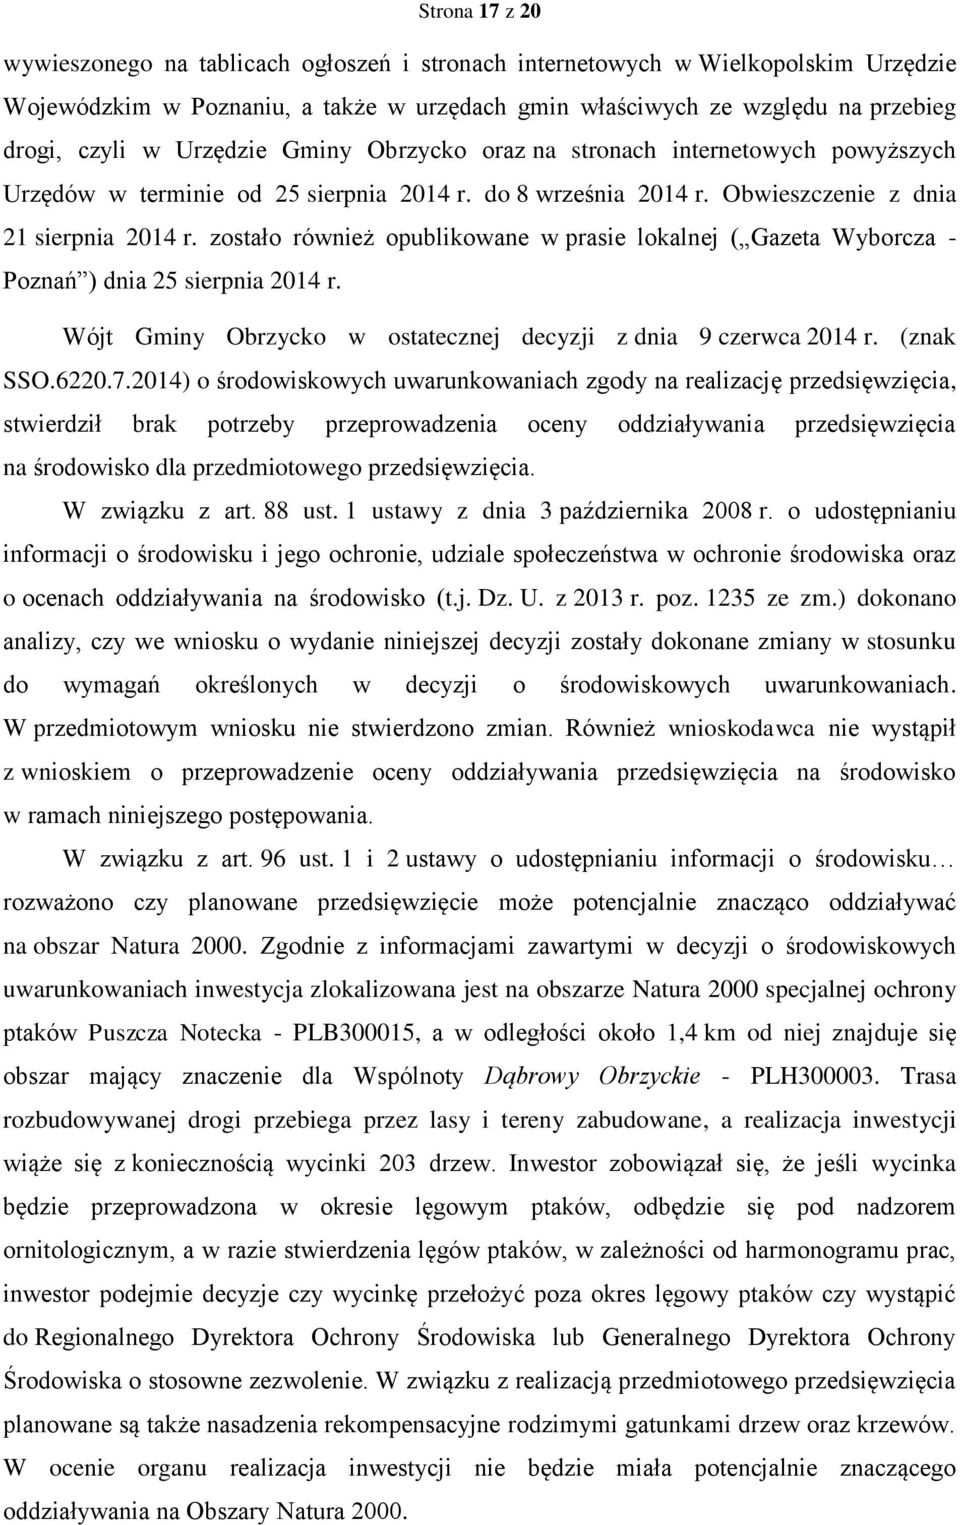 zostało również opublikowane w prasie lokalnej ( Gazeta Wyborcza - Poznań ) dnia 25 sierpnia 2014 r. Wójt Gminy Obrzycko w ostatecznej decyzji z dnia 9 czerwca 2014 r. (znak SSO.6220.7.